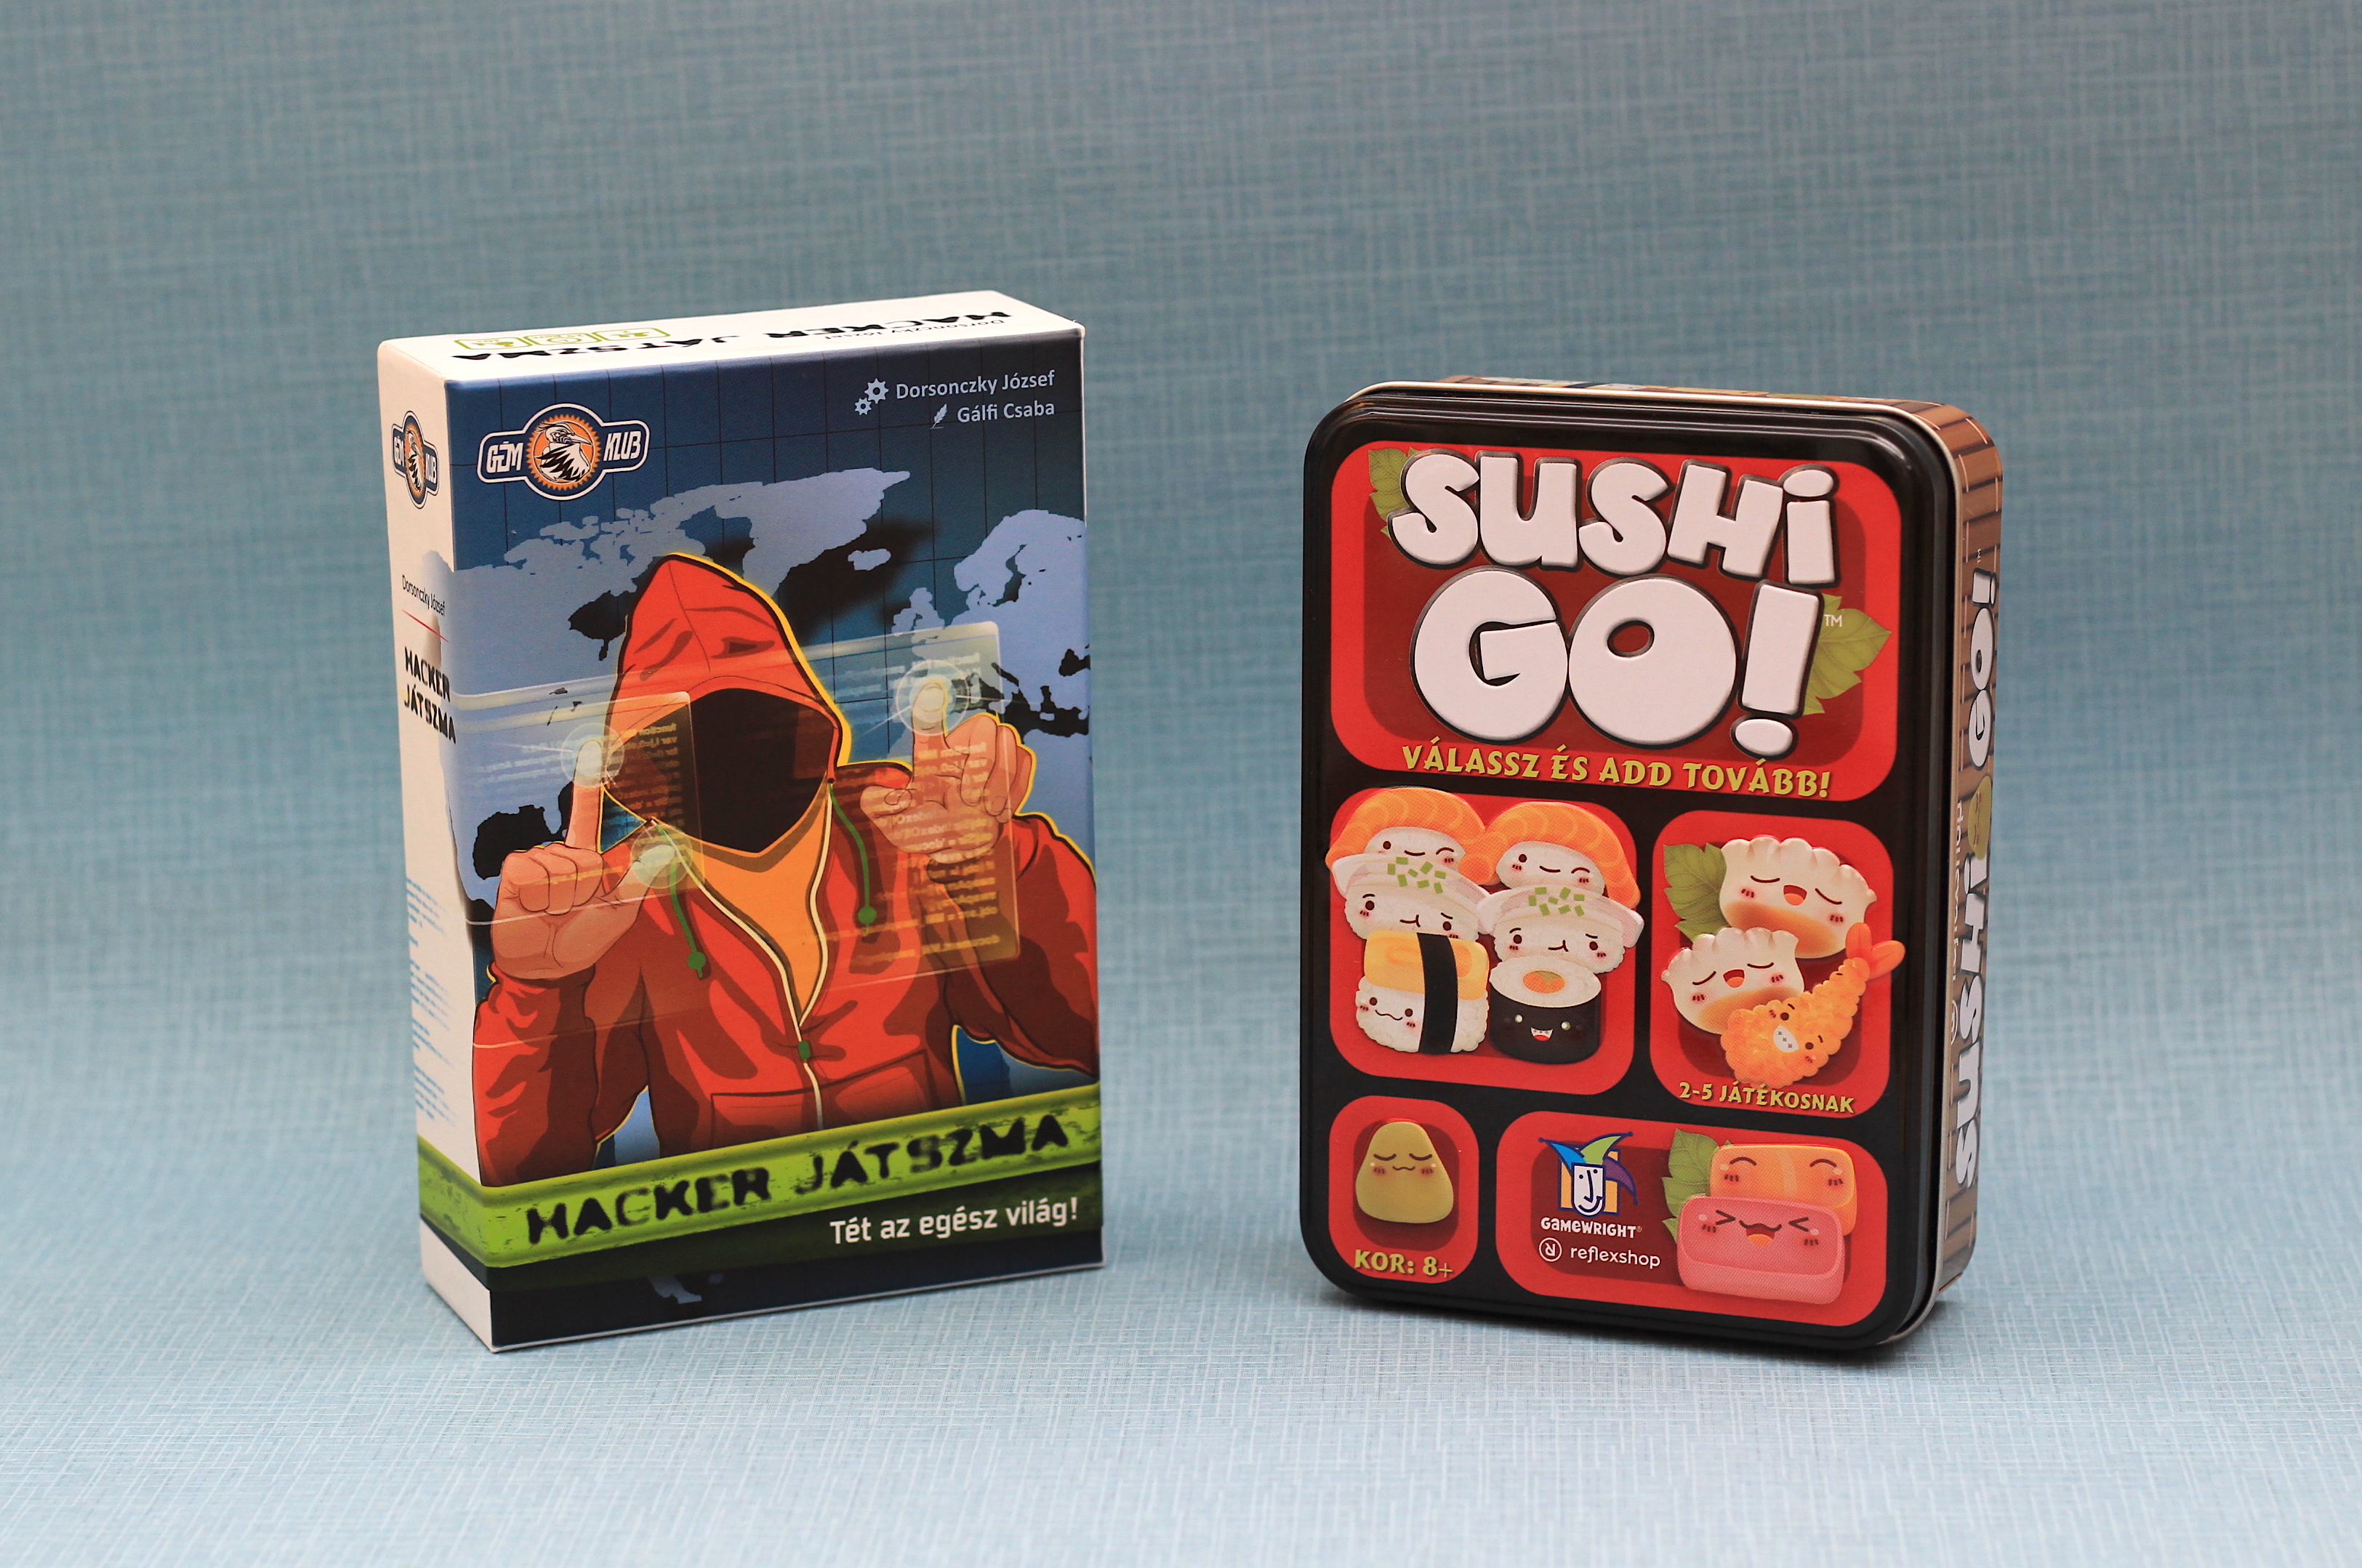 Hackerjátszma és Sushi Go: ha van negyedórád, ezzel játssz!